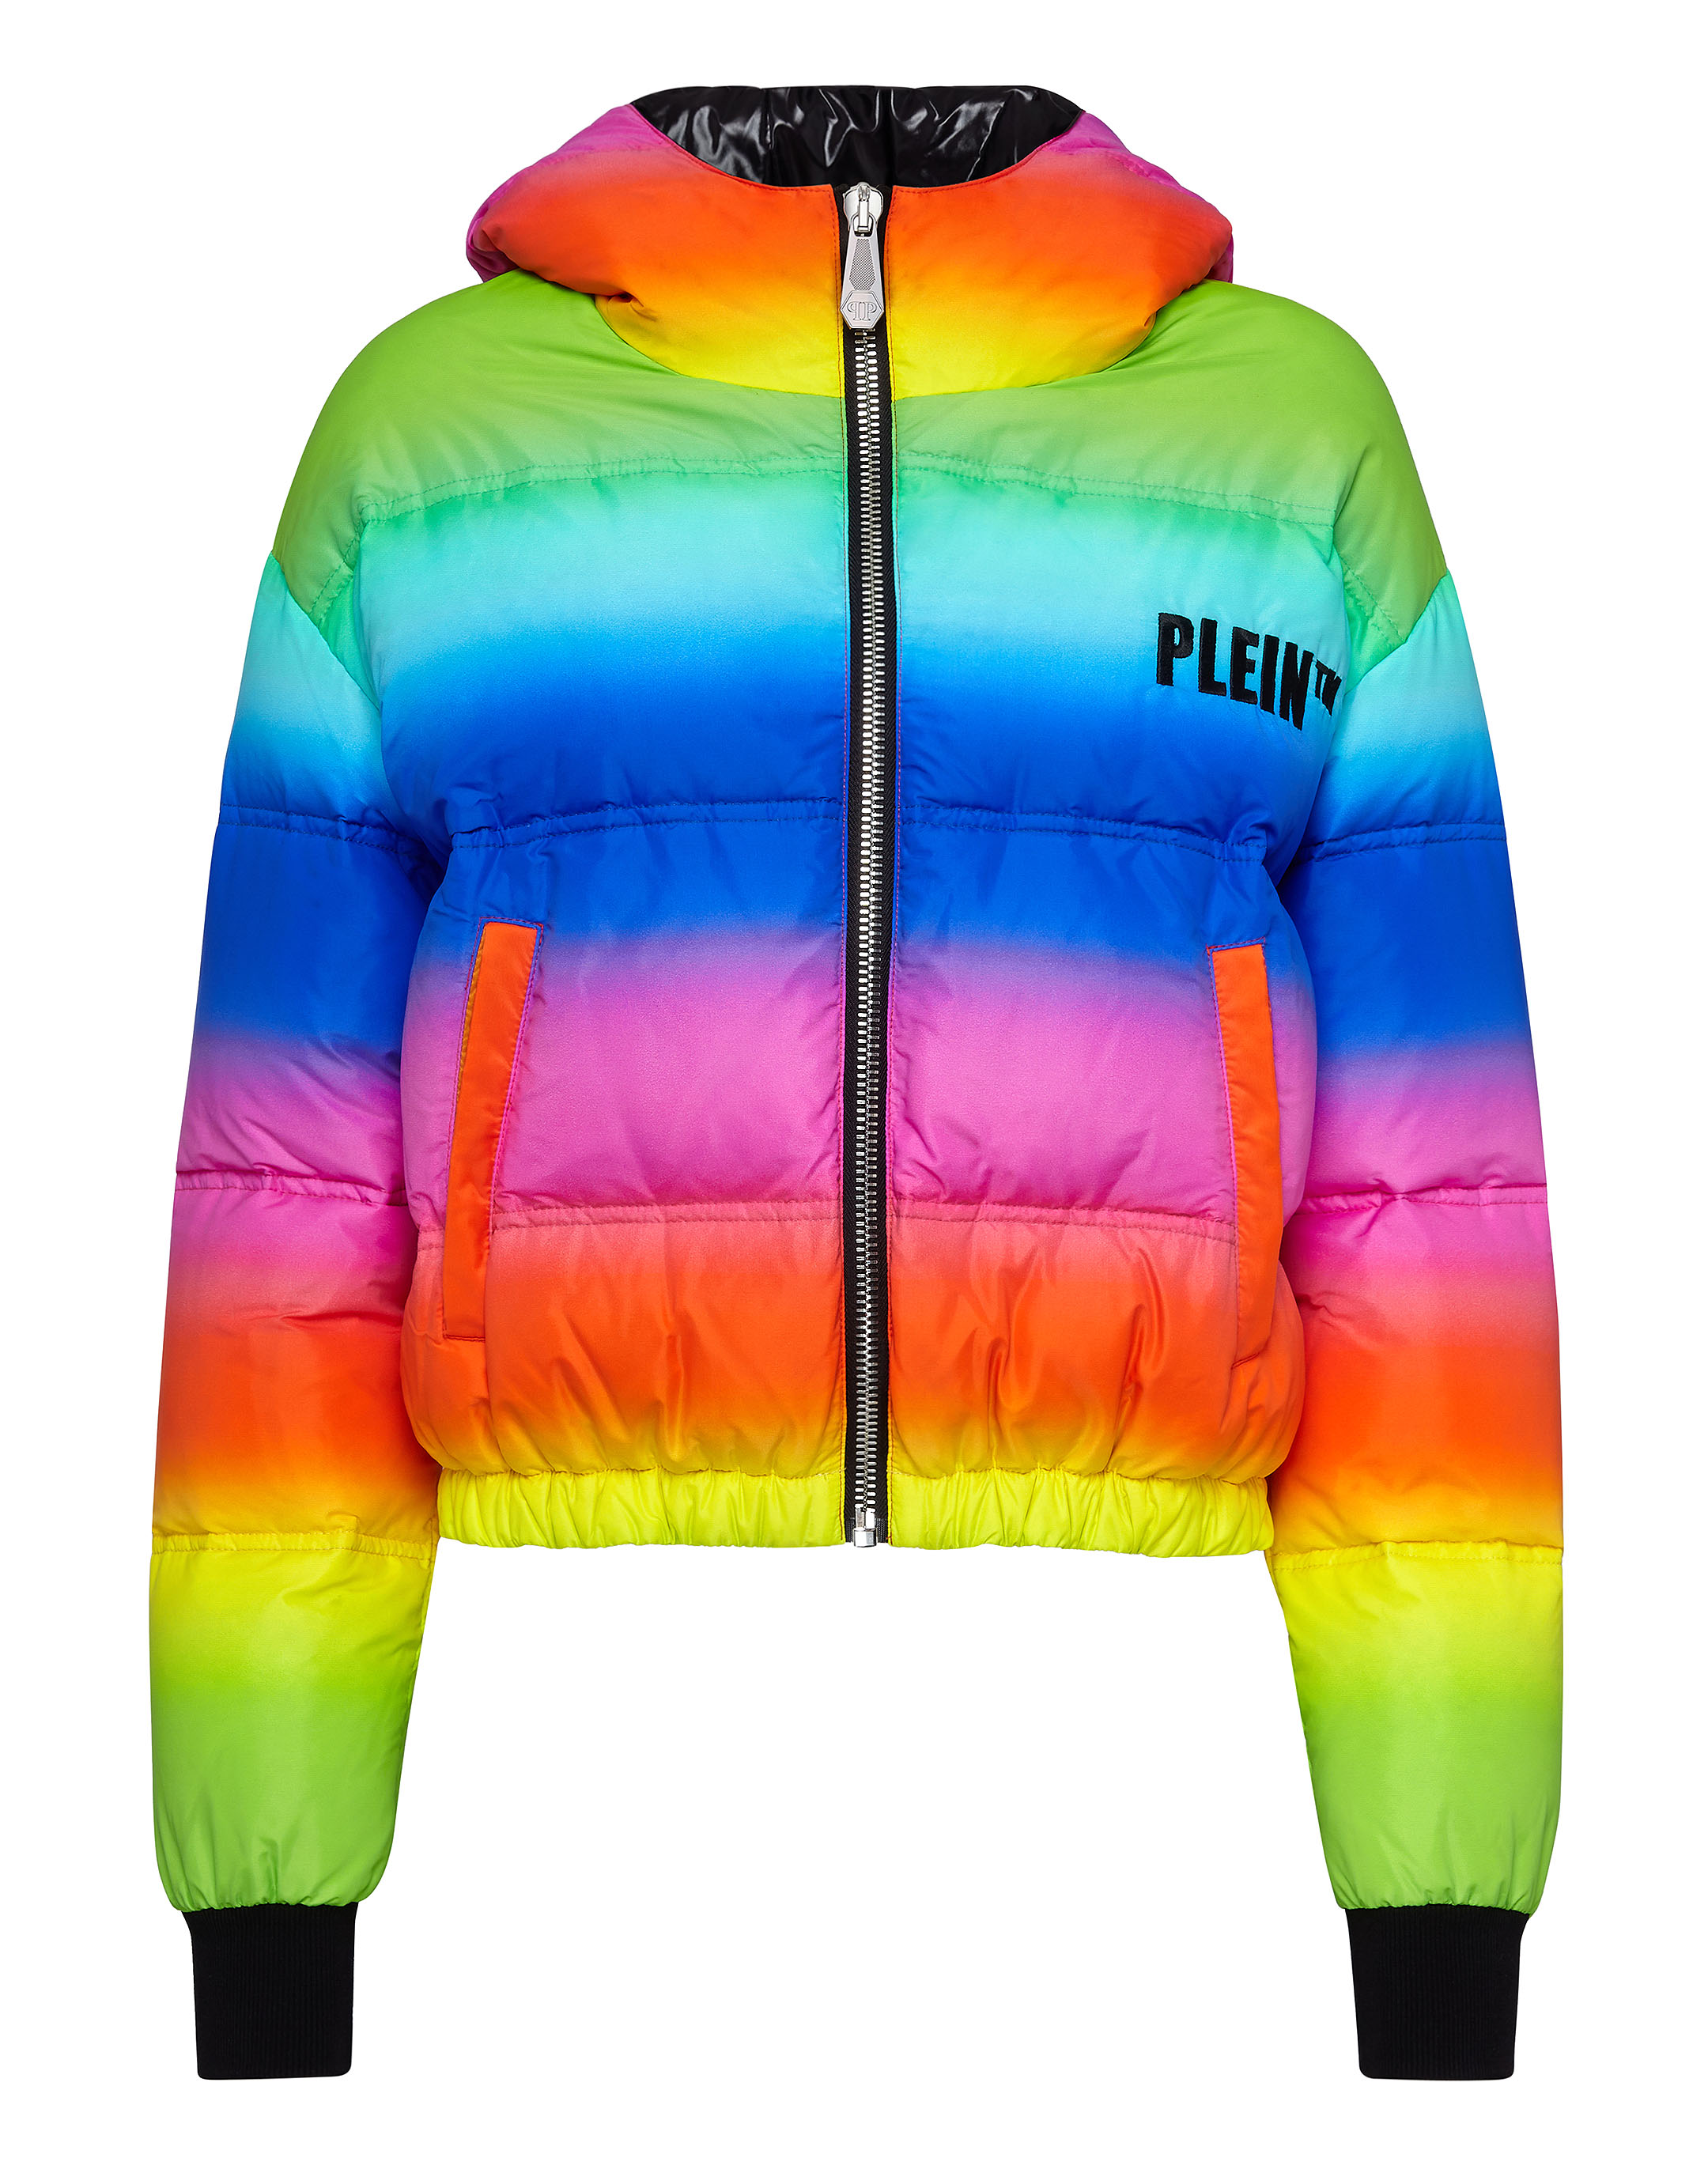 Rainbow Puffer Jacket | Philipp Plein Outlet